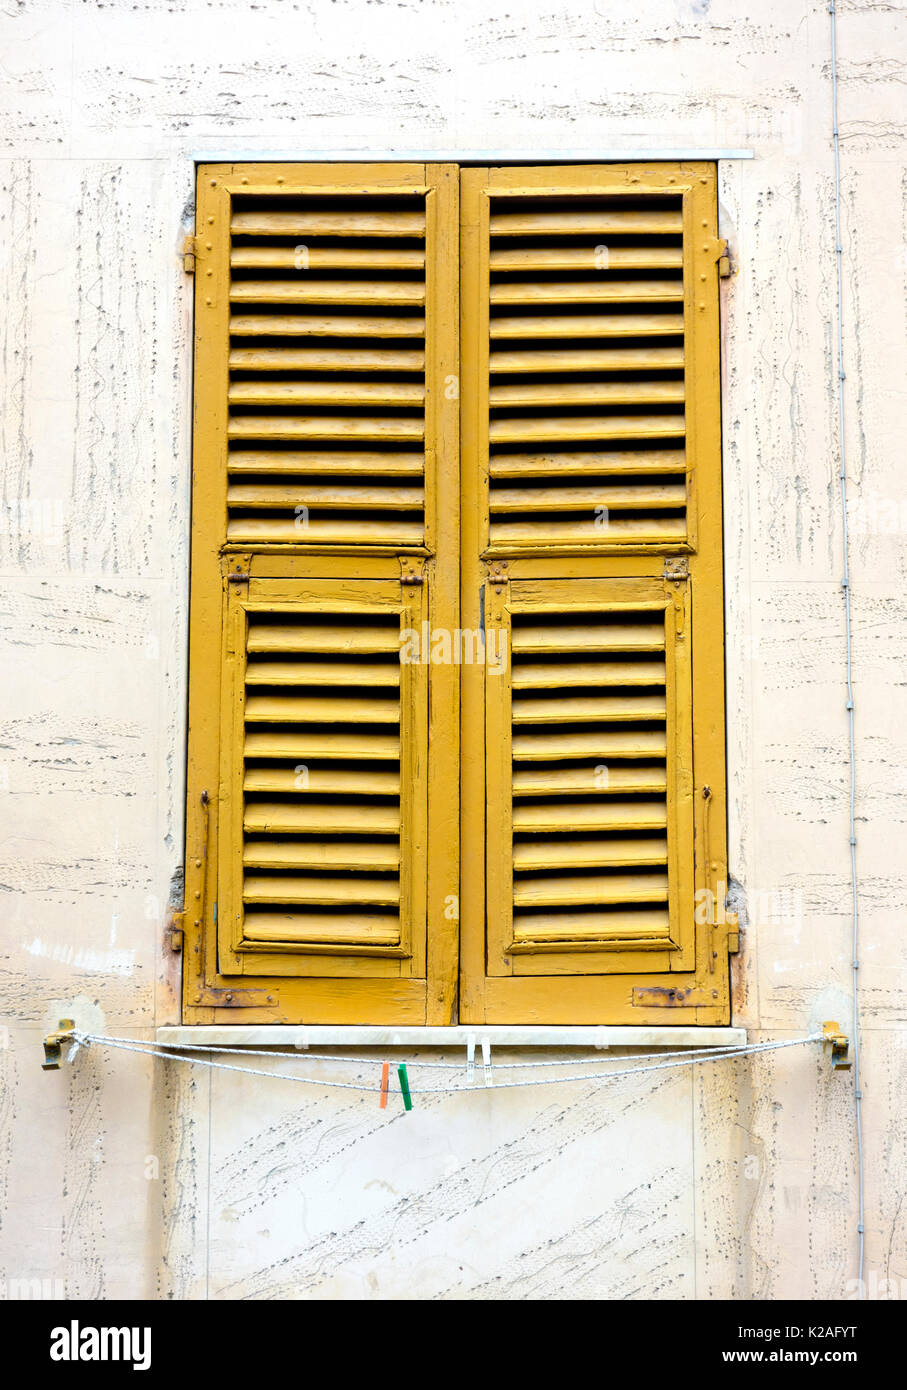 Classic closed Italian window shutters, Monterosso al Mare, 2017. Stock Photo